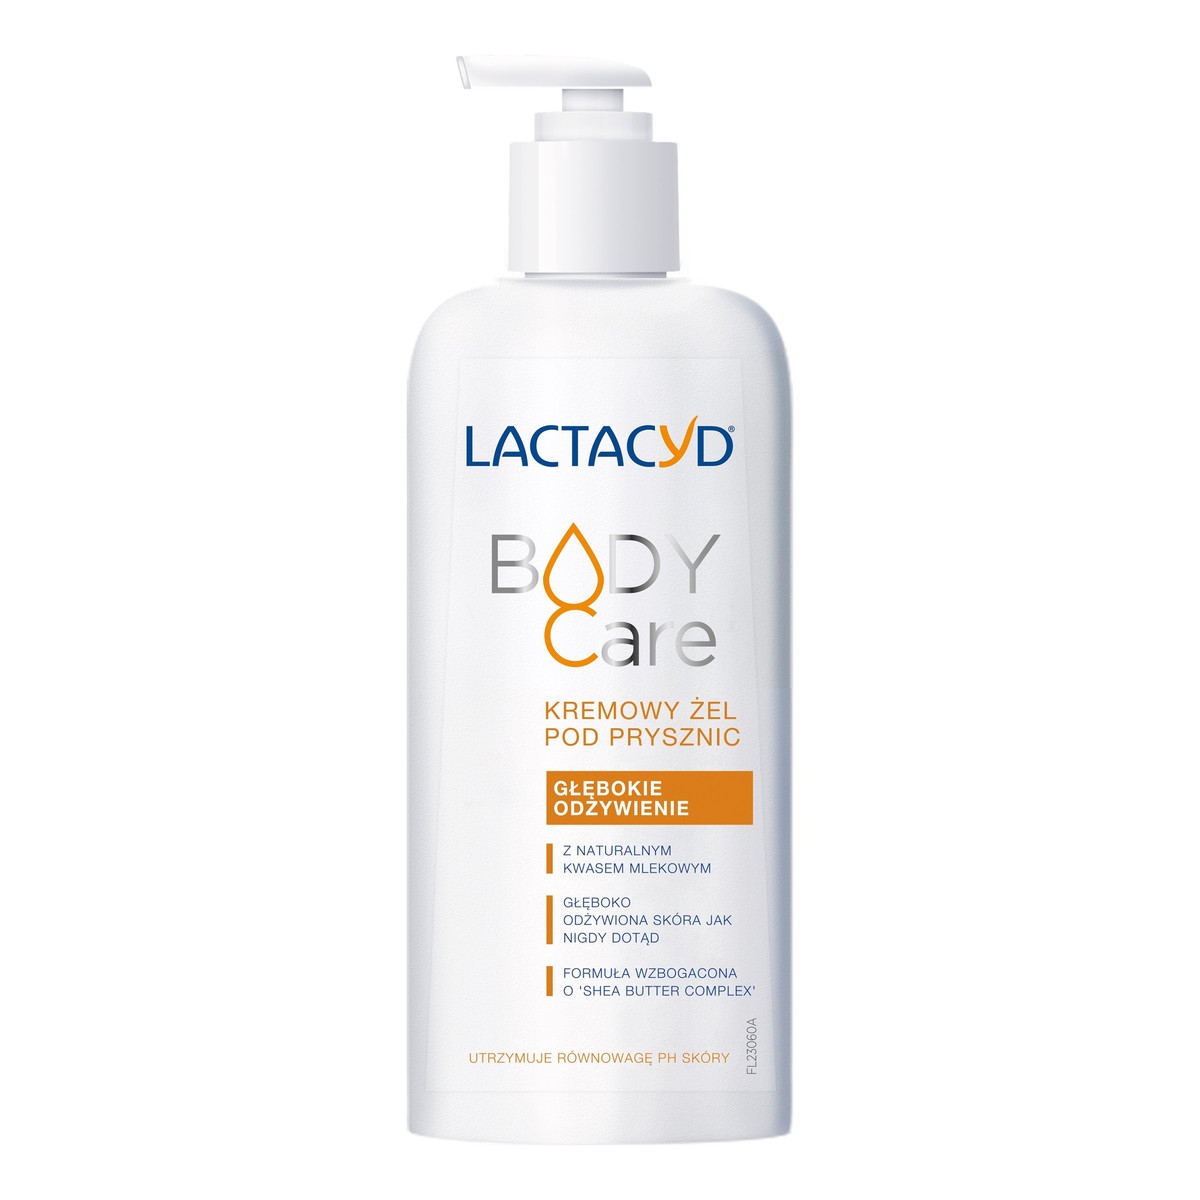 Lactacyd Body Care Kremowy żel pod prysznic Głębokie Odżywienie 1 szt. 300ml